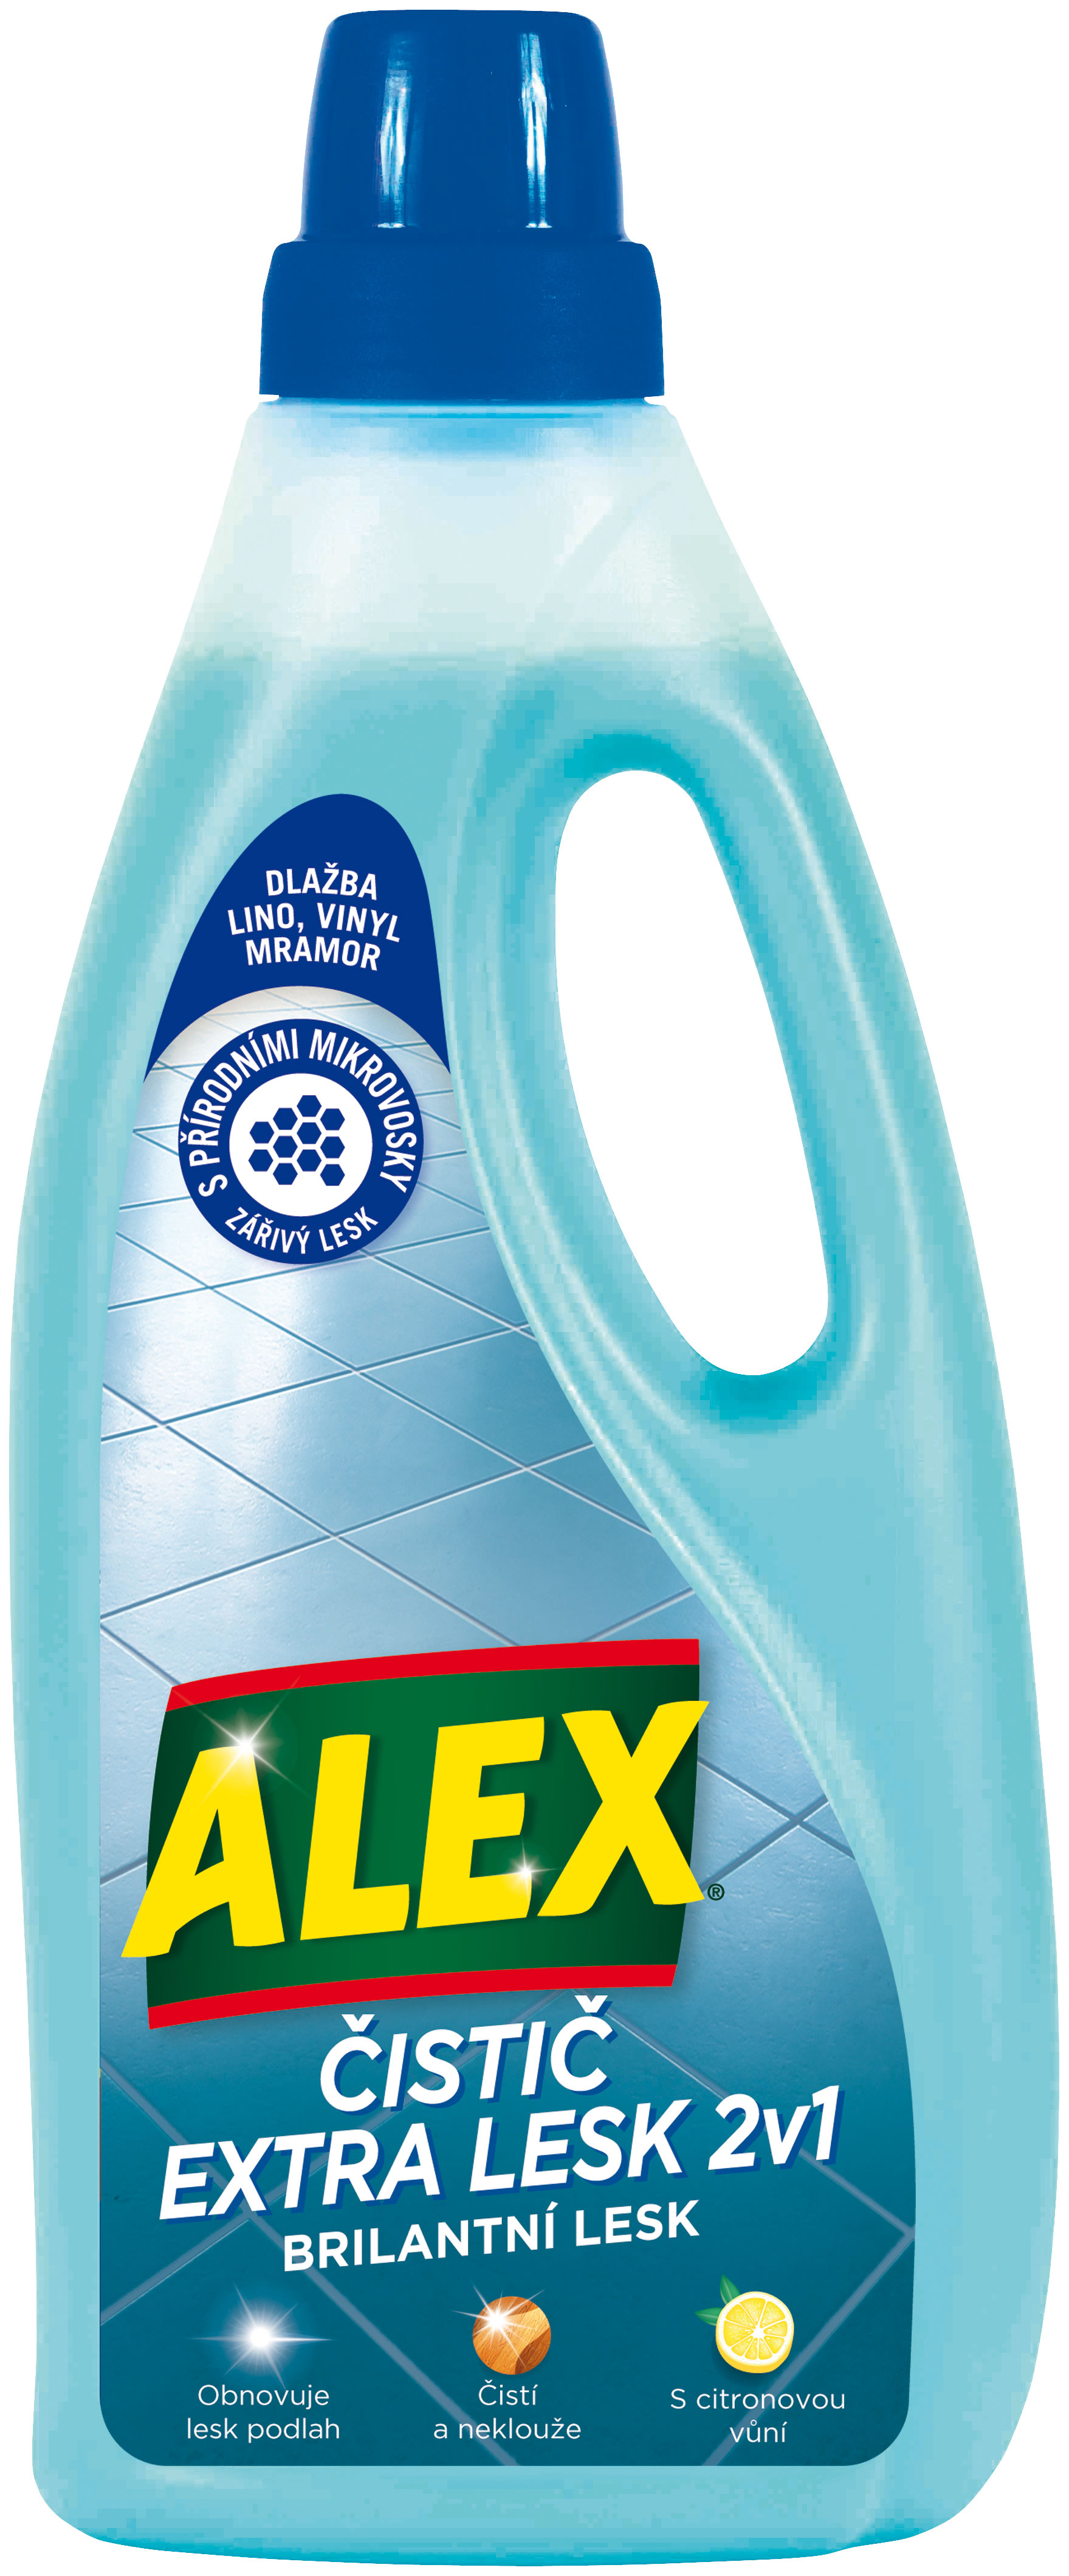 ALEX čistič extra lesk 2 v 1 dlažby, lino, vinyl a mramor s citronovou vůní 750 ml